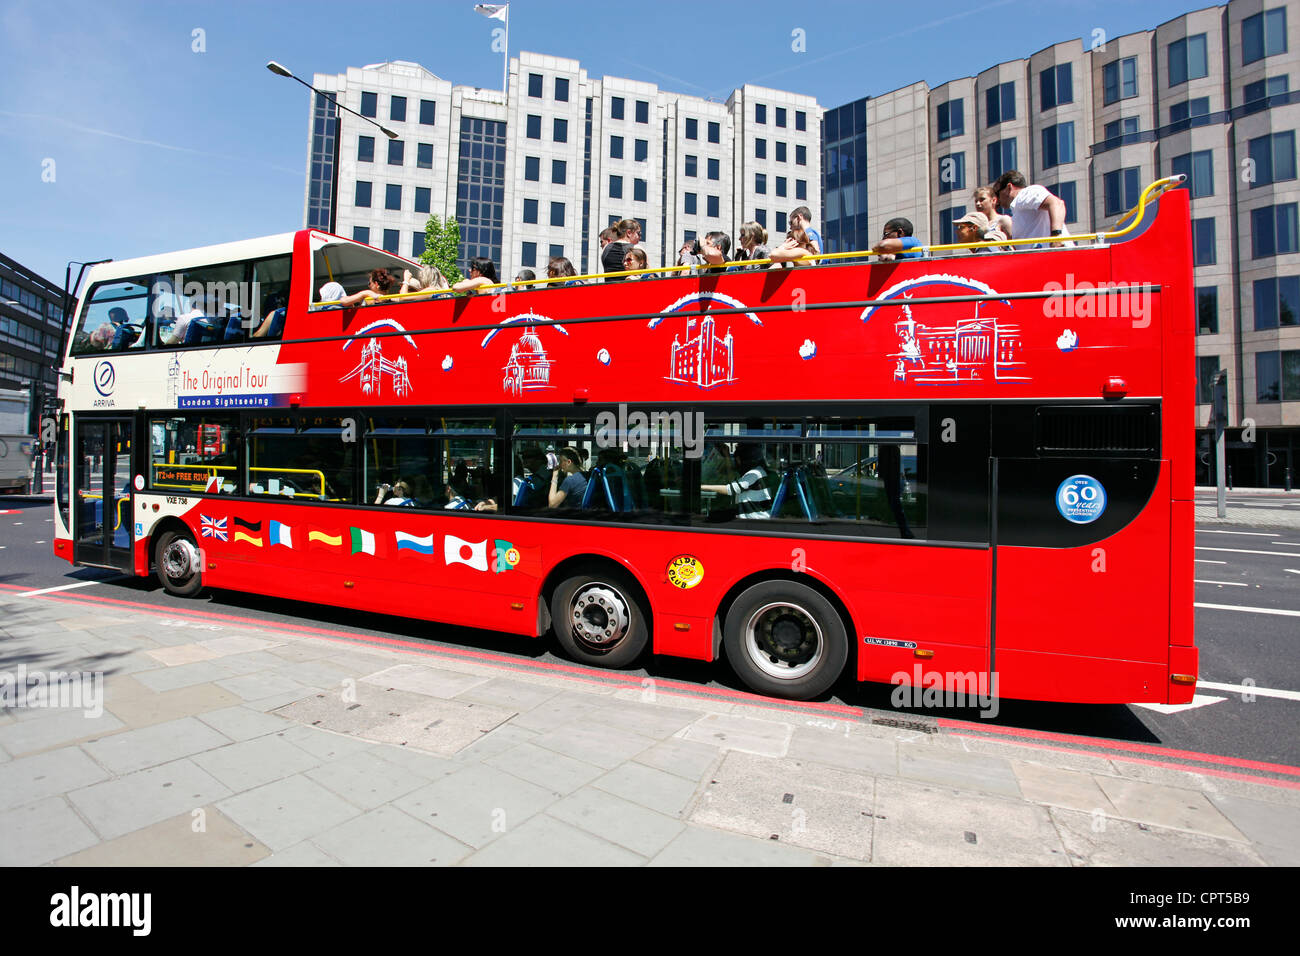 Double decker tourist Sightseeing tour bus, London, England Stock Photo